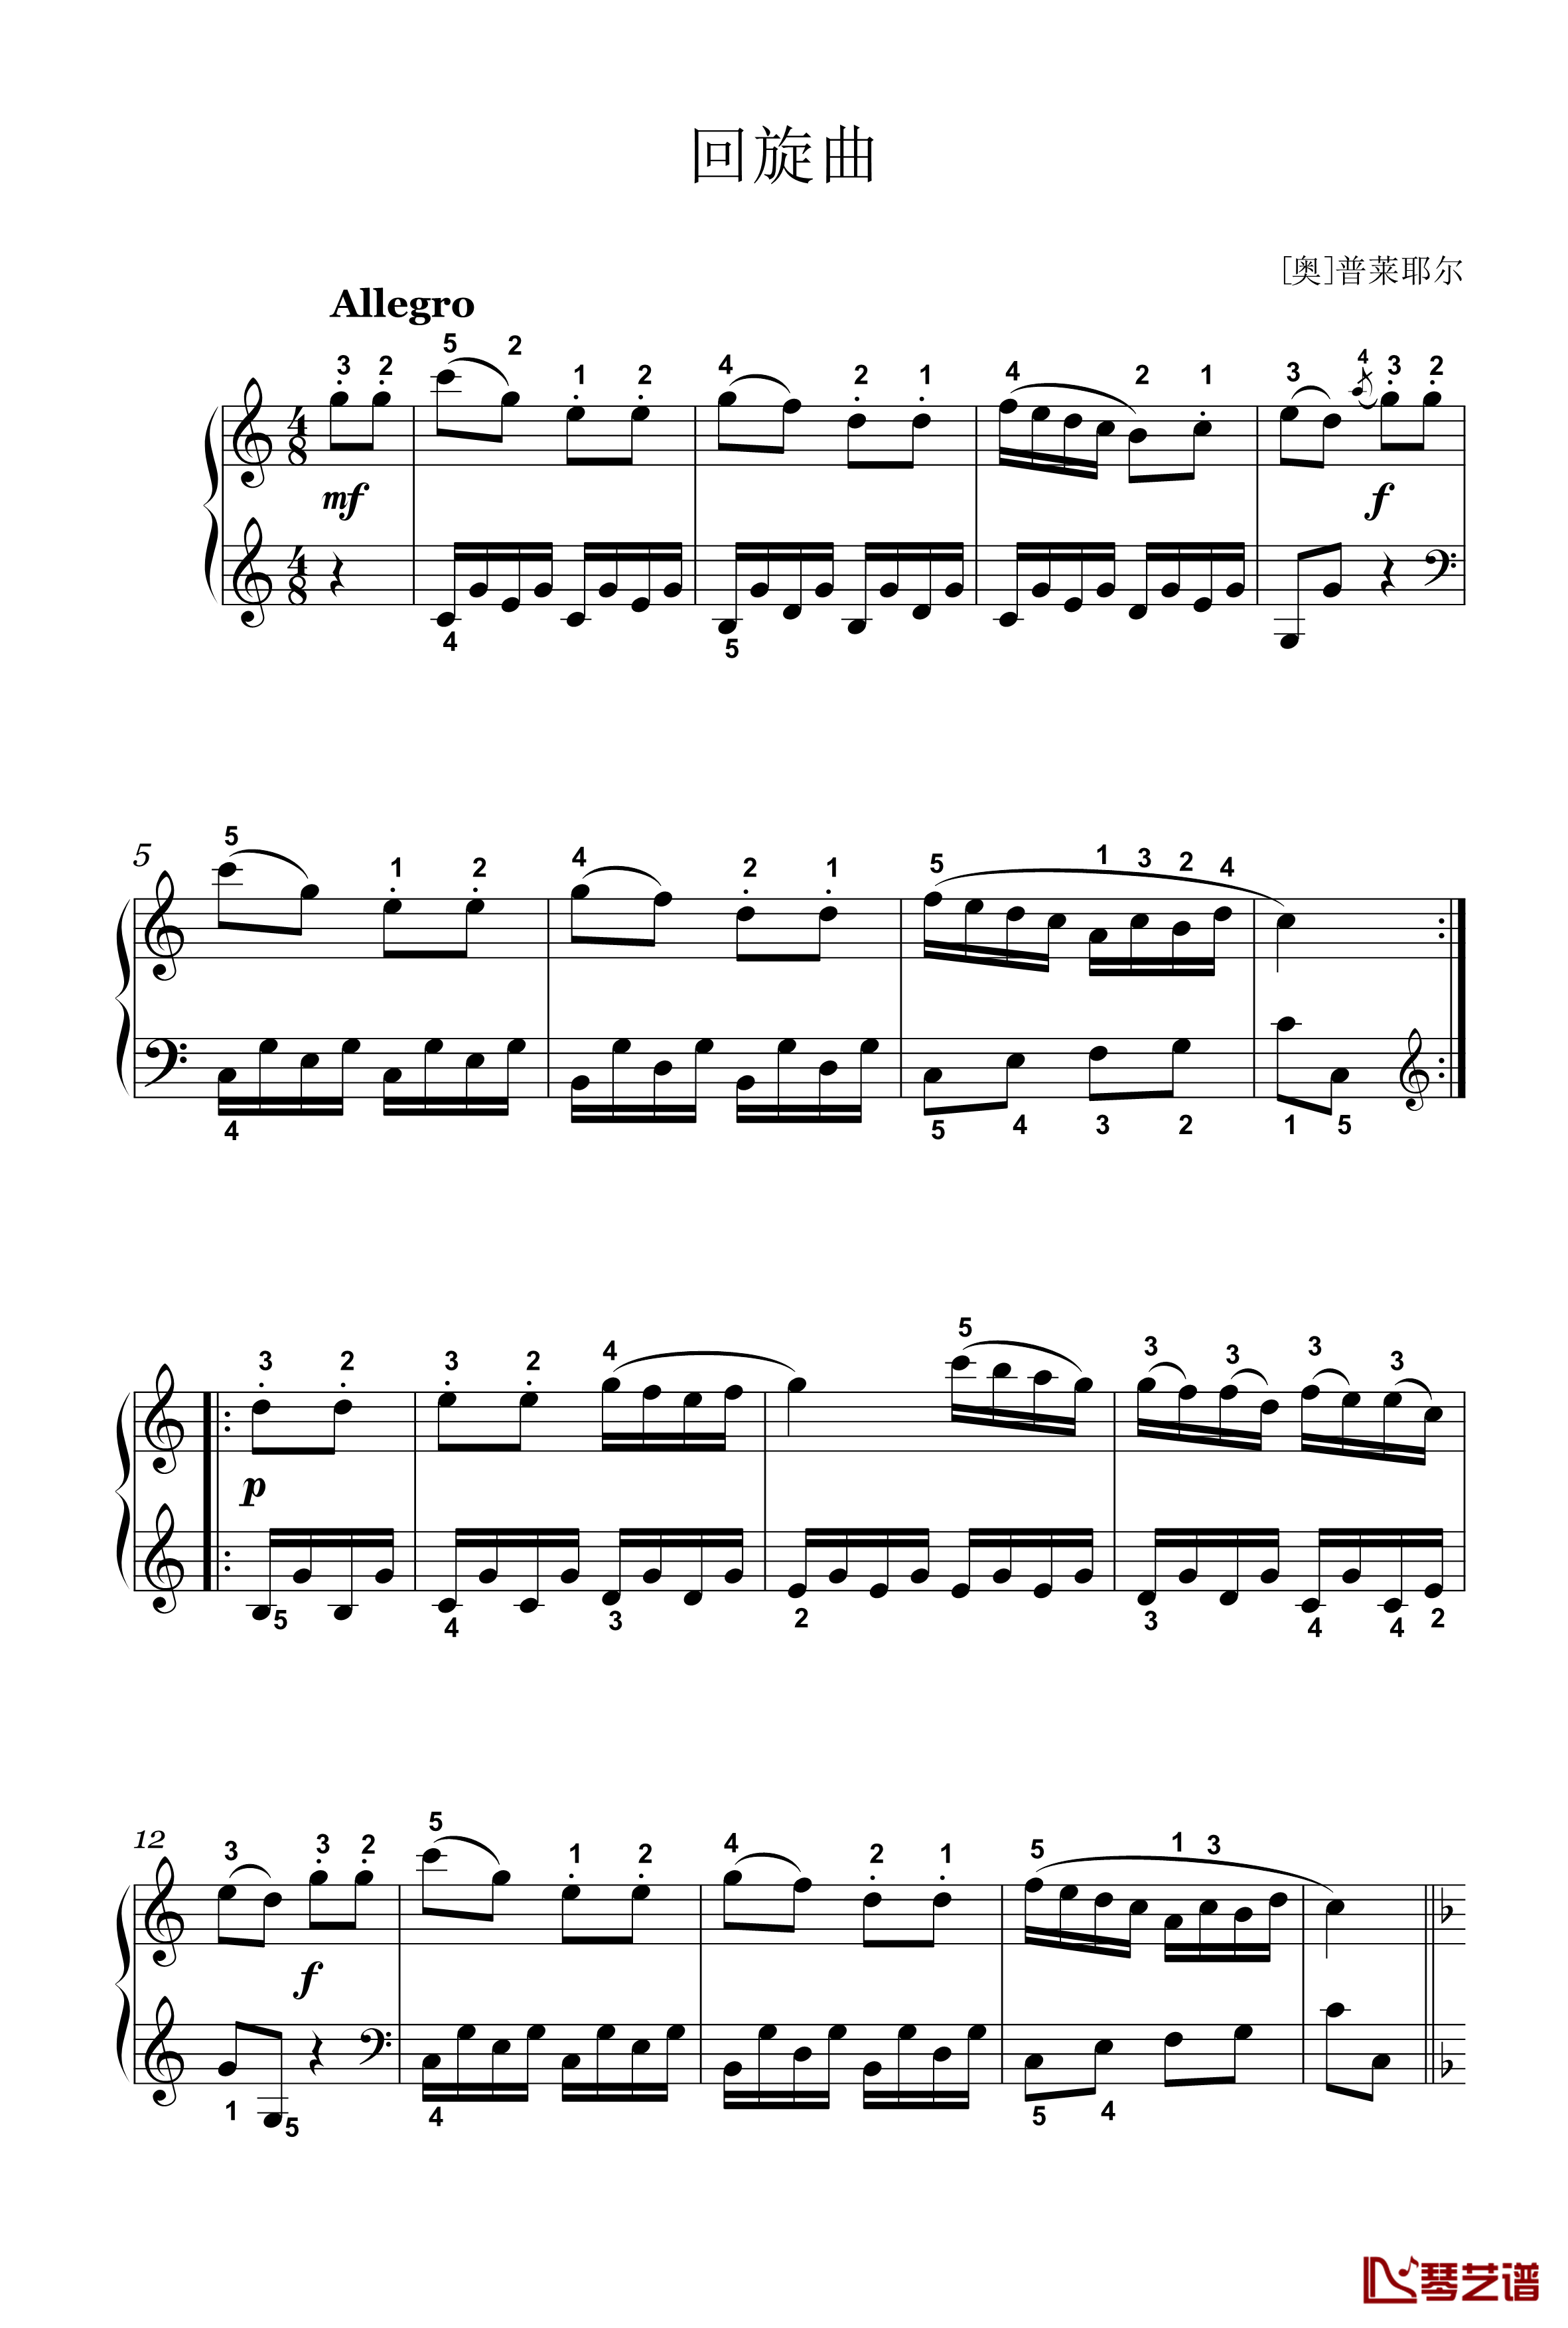 回旋曲钢琴谱-四级-普莱耶尔1